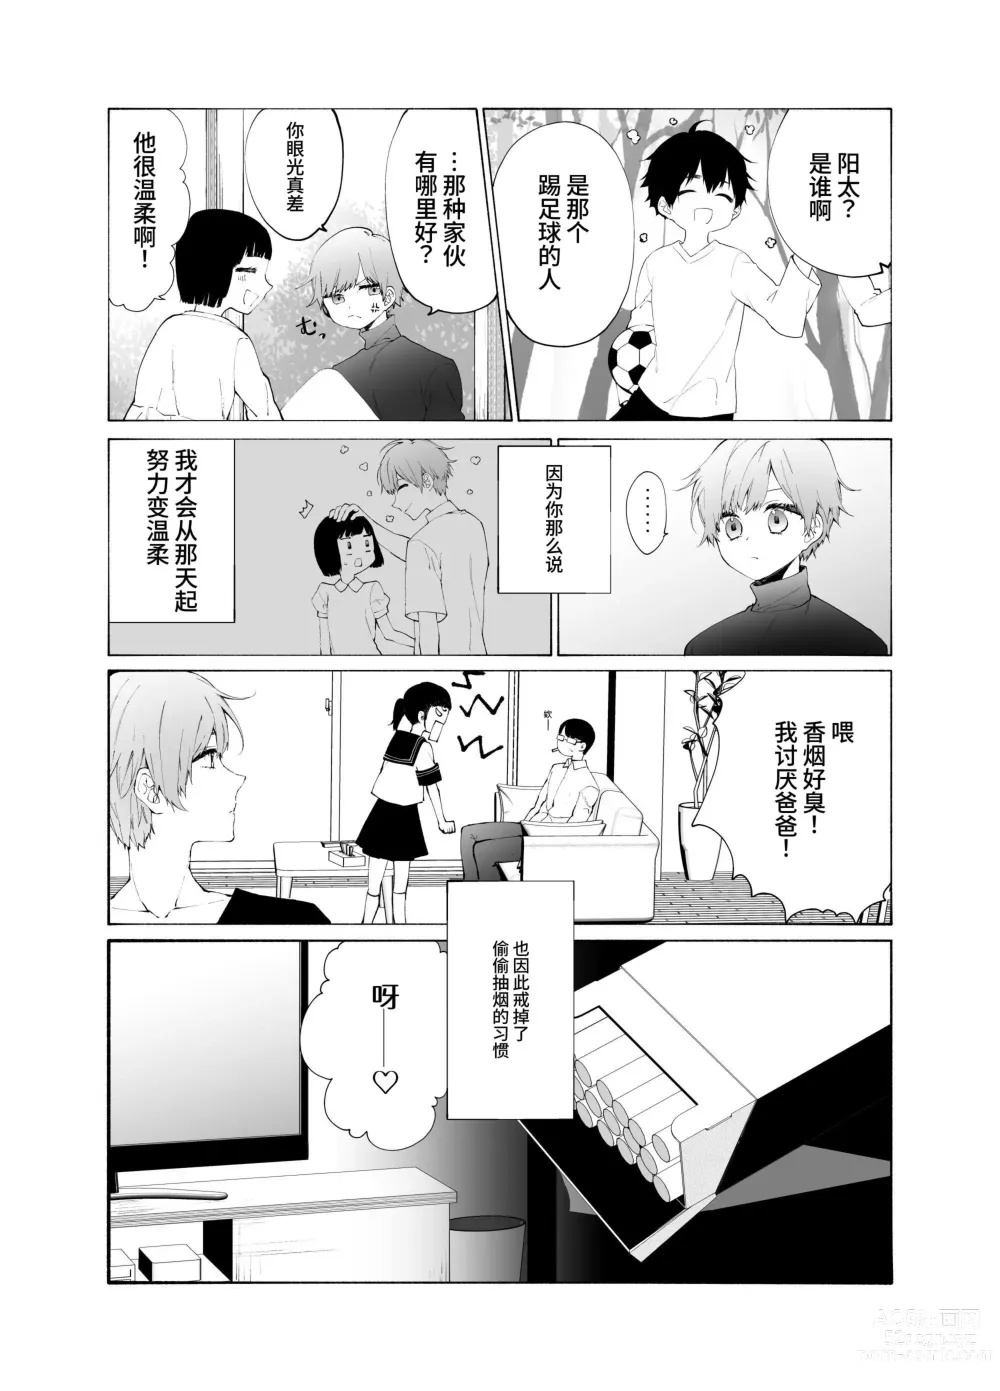 Page 9 of doujinshi Gikei no Ai